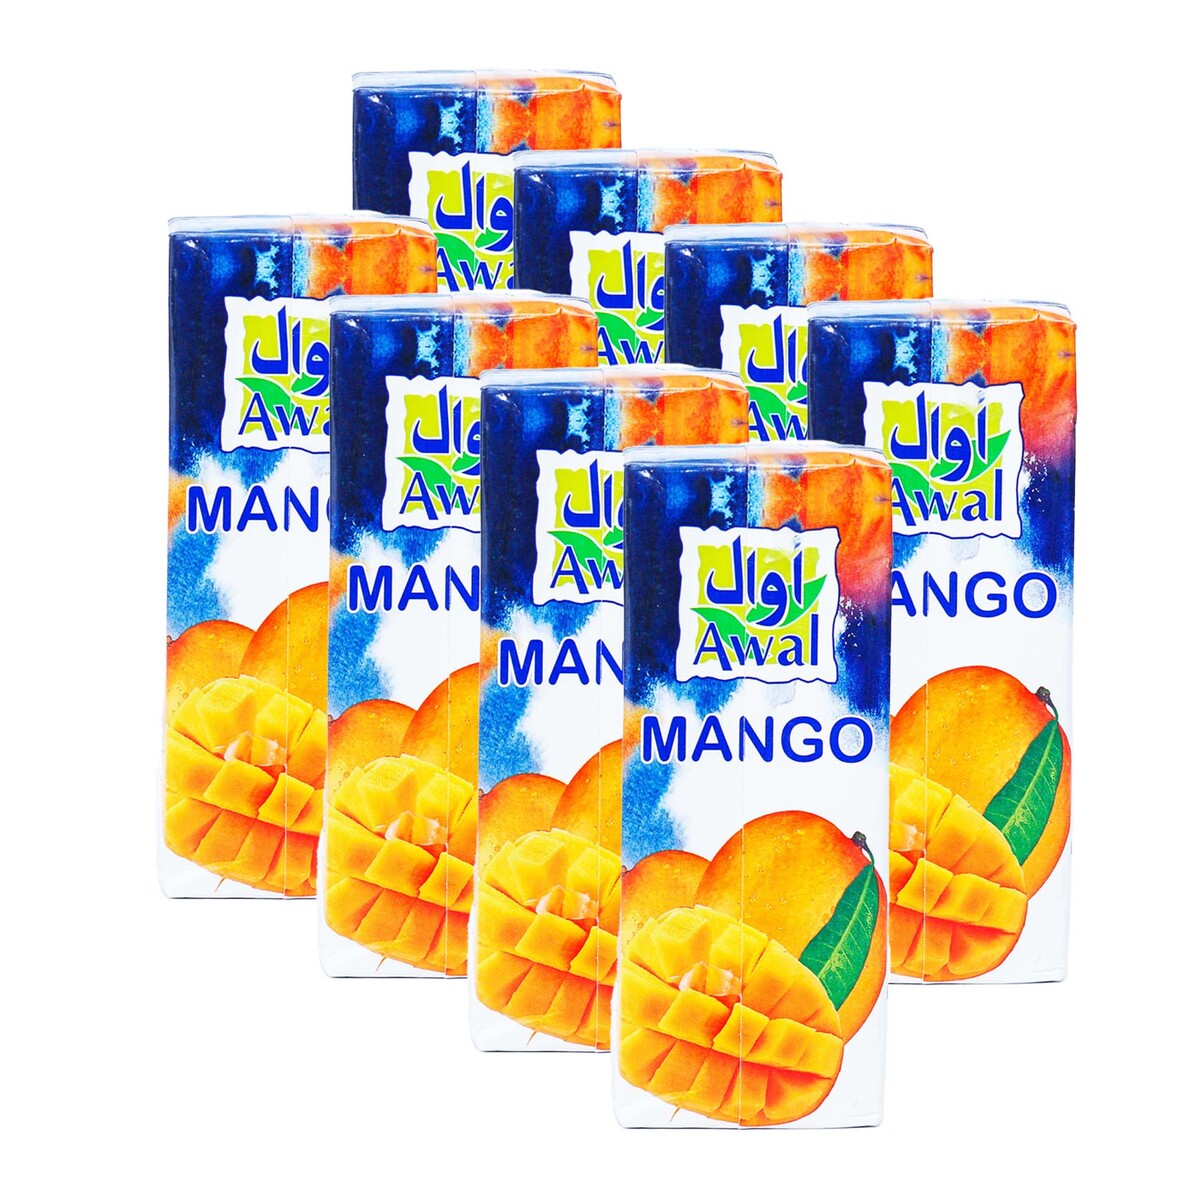 Awal Fruit Drink Mango 6 x 200ml